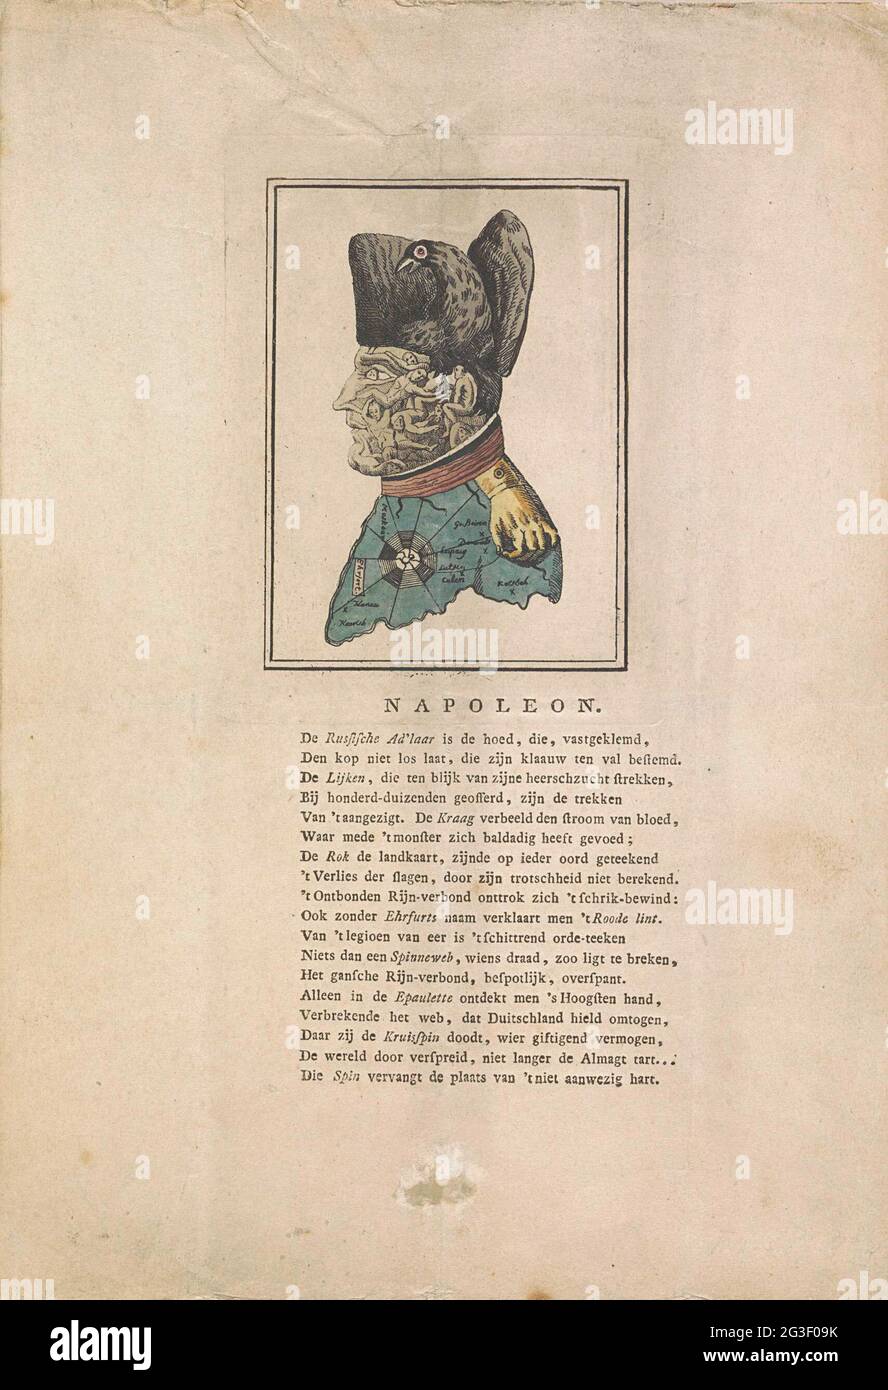 Caricature sur Napoléon, 1813; Napoléon. Caricature sur Napoléon de 1813 où  son visage est composé des cadavres de ses victimes, son chapeau est  l'aigle prussien, son aigle est une main attachant. Le